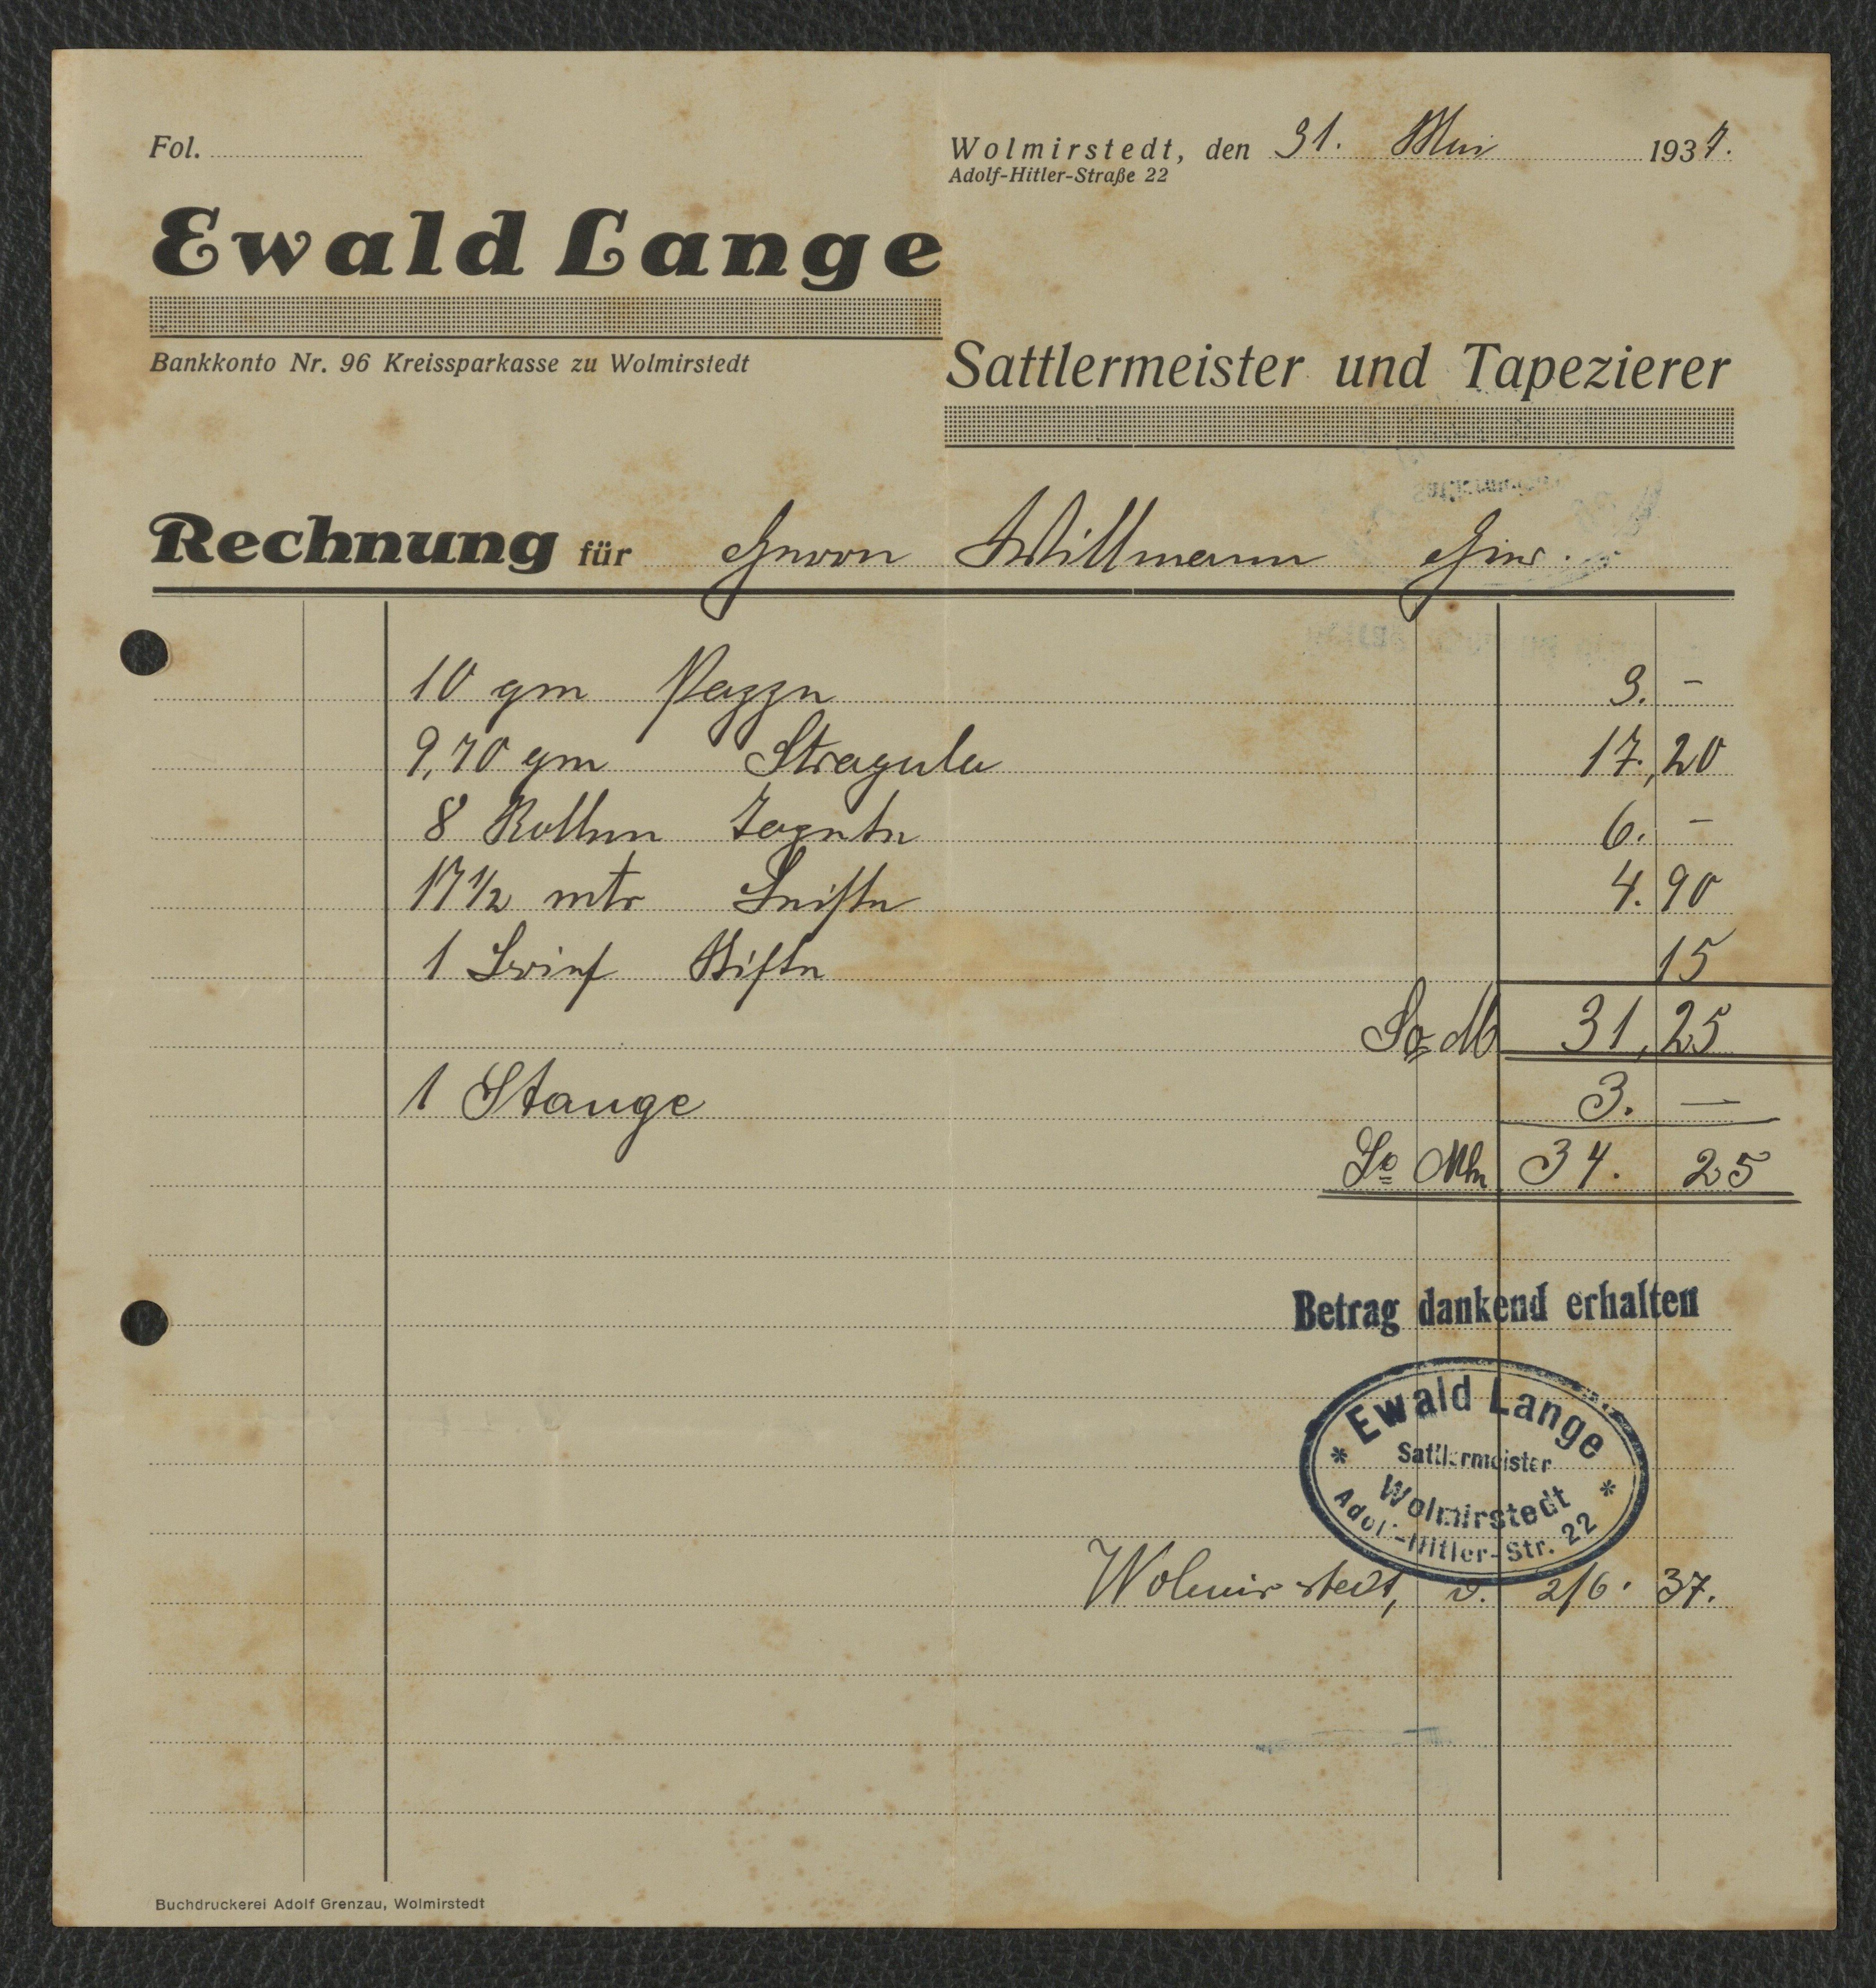 Rechnung Sattlermeister und Tapezierer Ewald Lange für Willmann, Wolmirstedt vom 31.05.1937 (Museum Wolmirstedt RR-F)